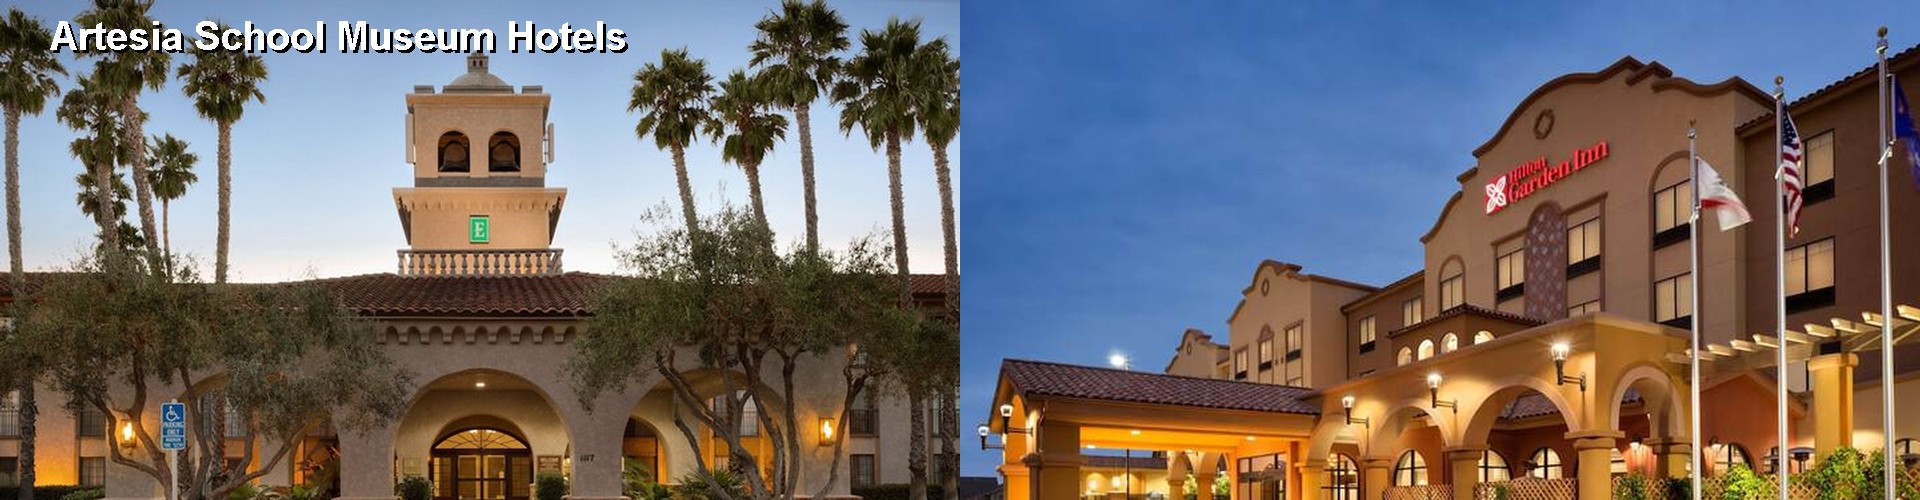 5 Best Hotels near Artesia School Museum